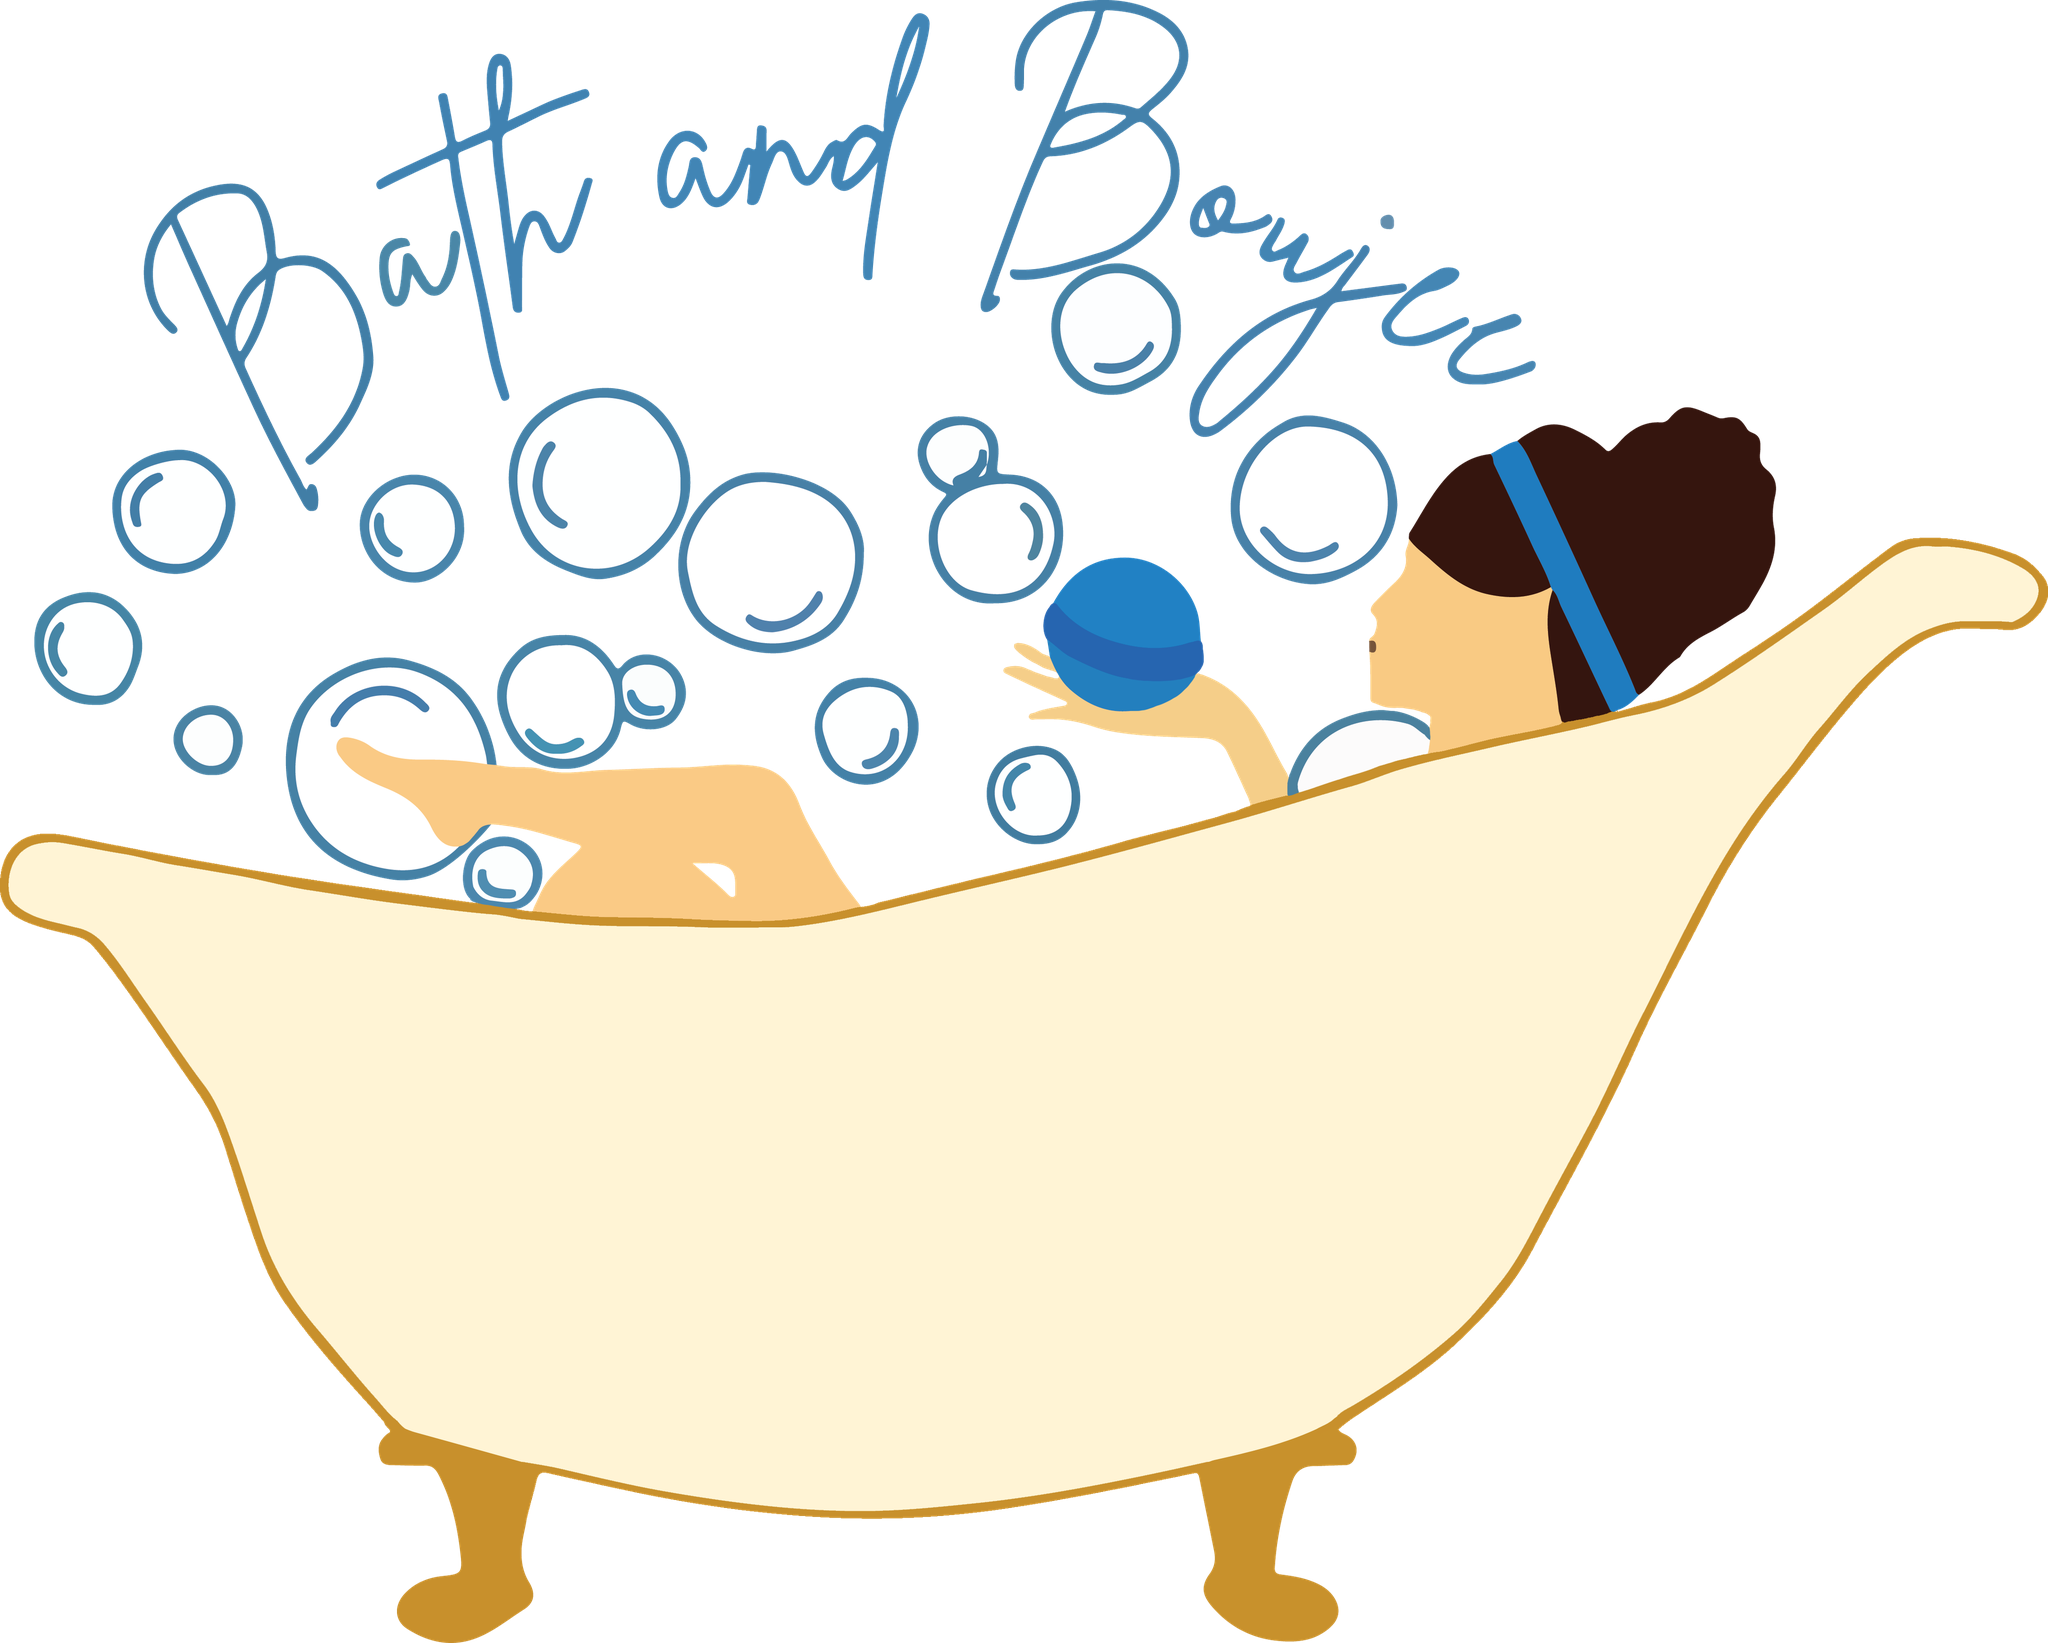 Bath & Boujee